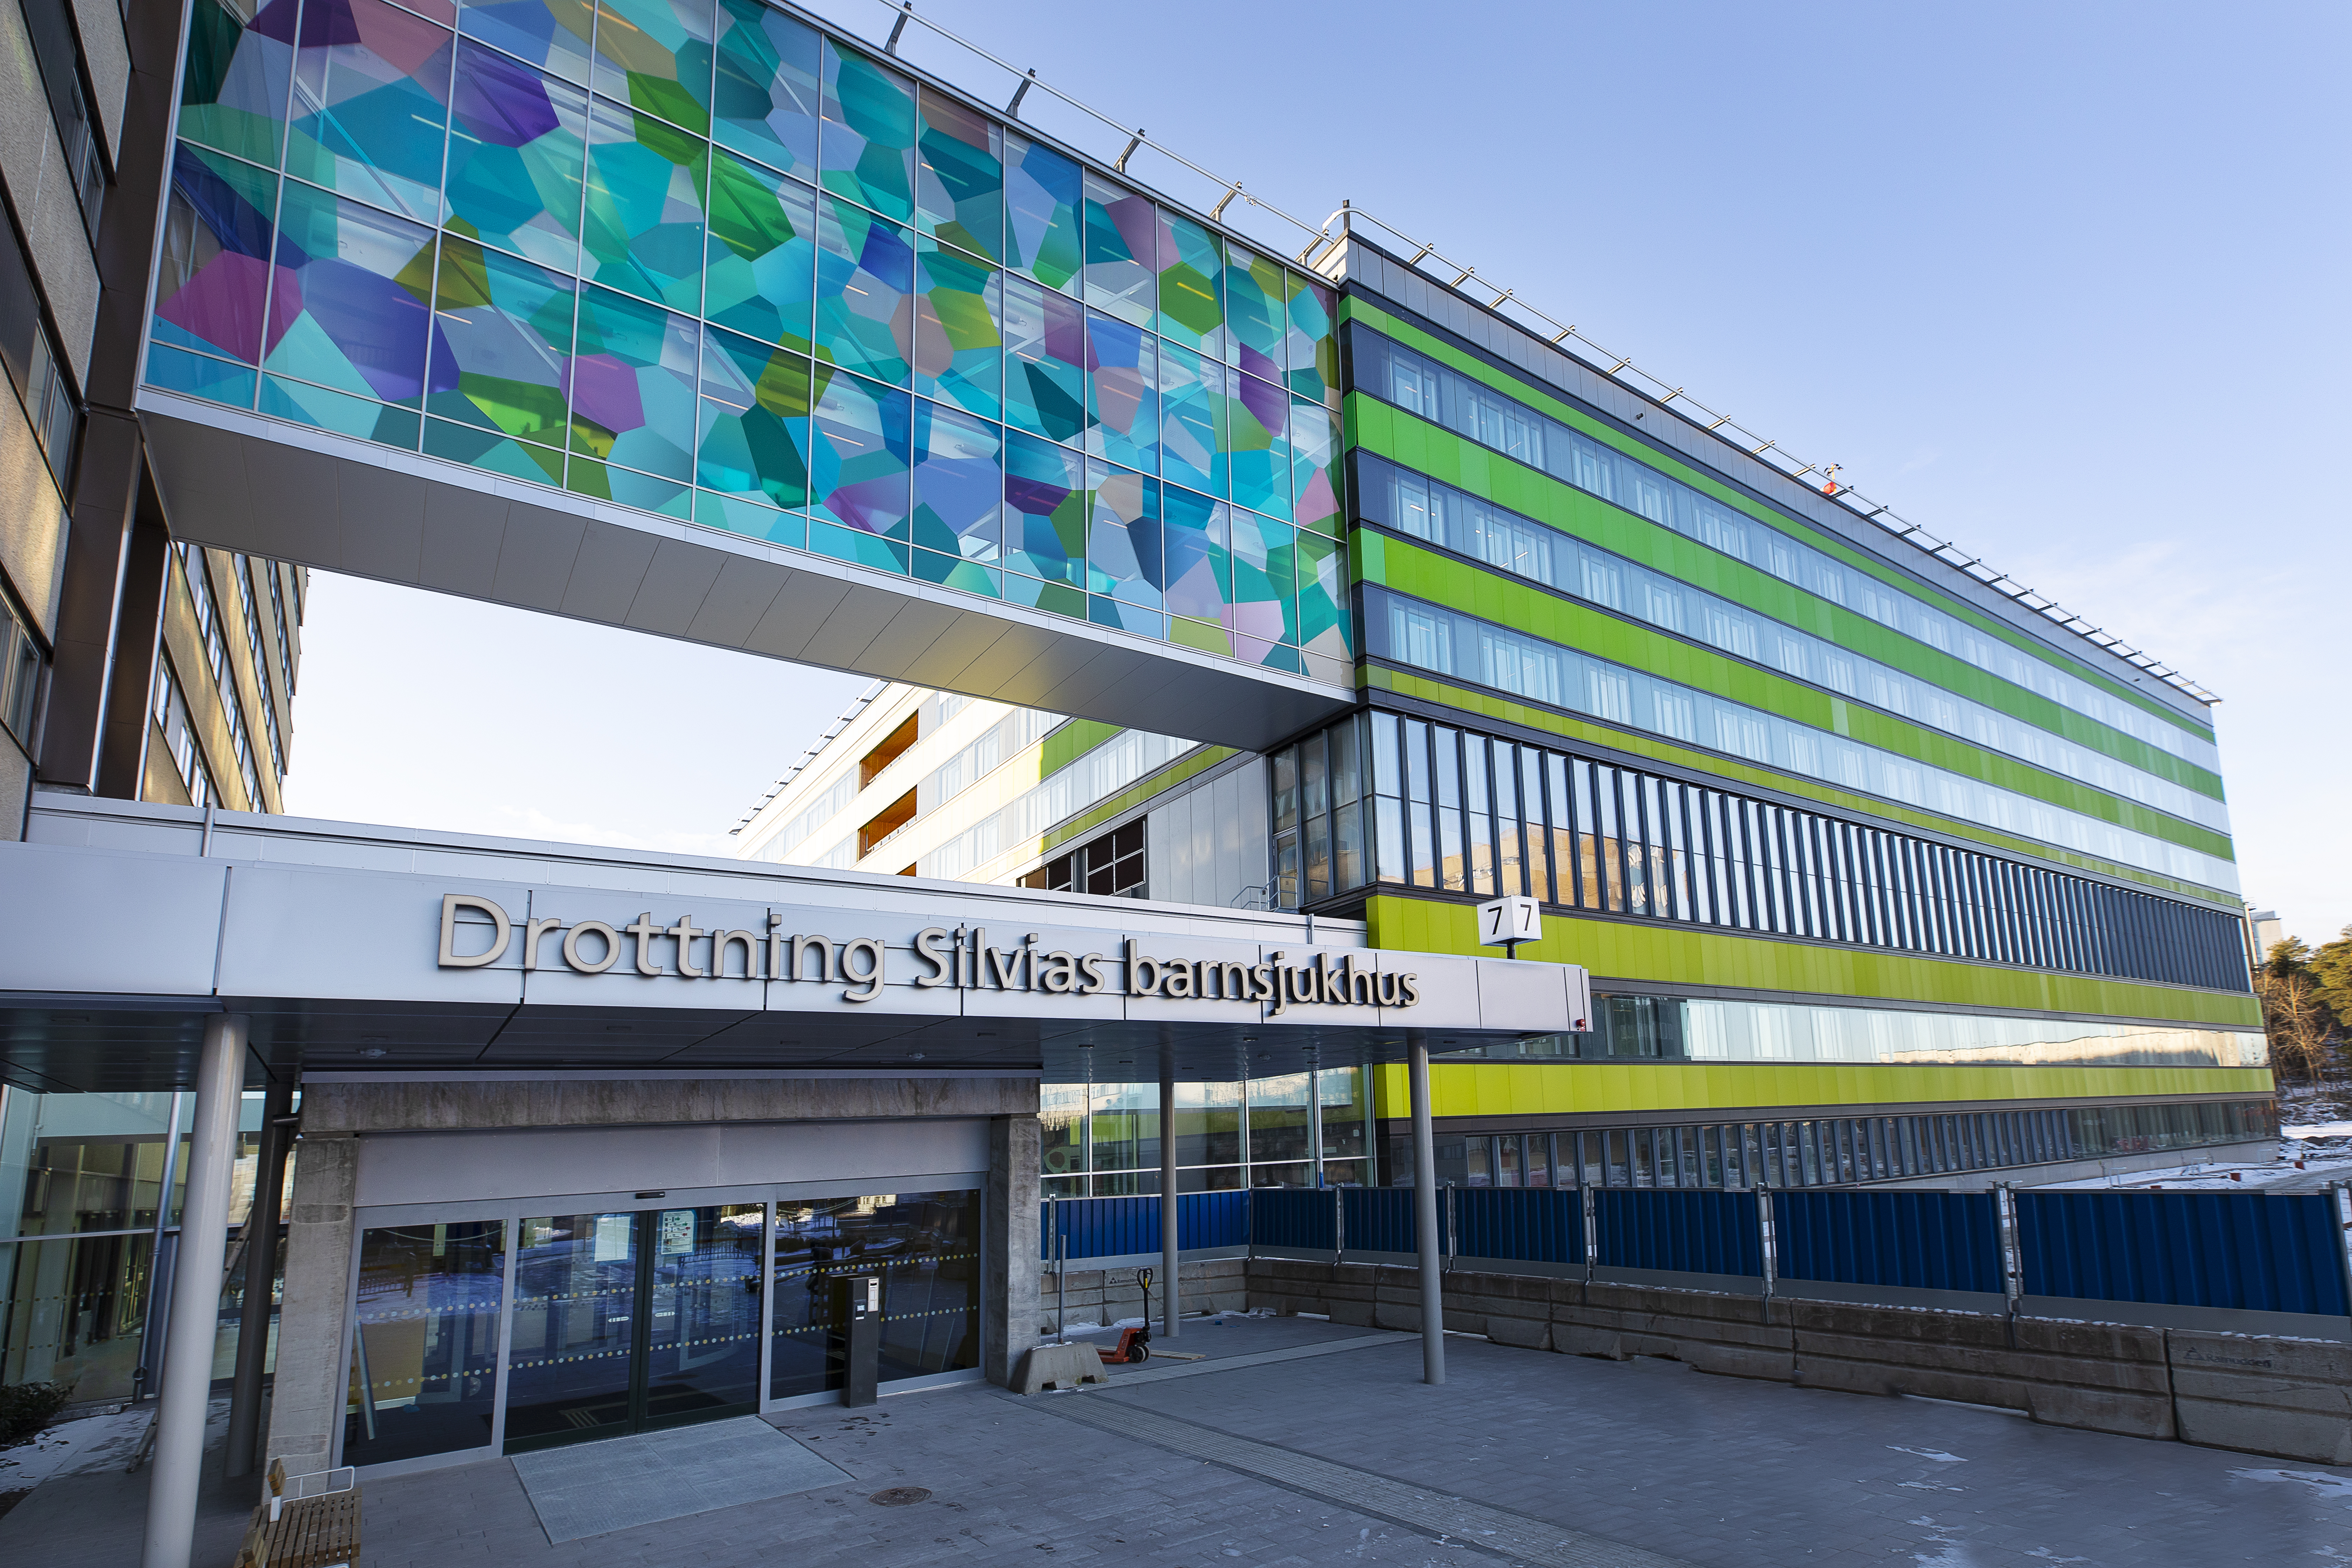 Drottning Silvias barnsjukhus, Göteborg